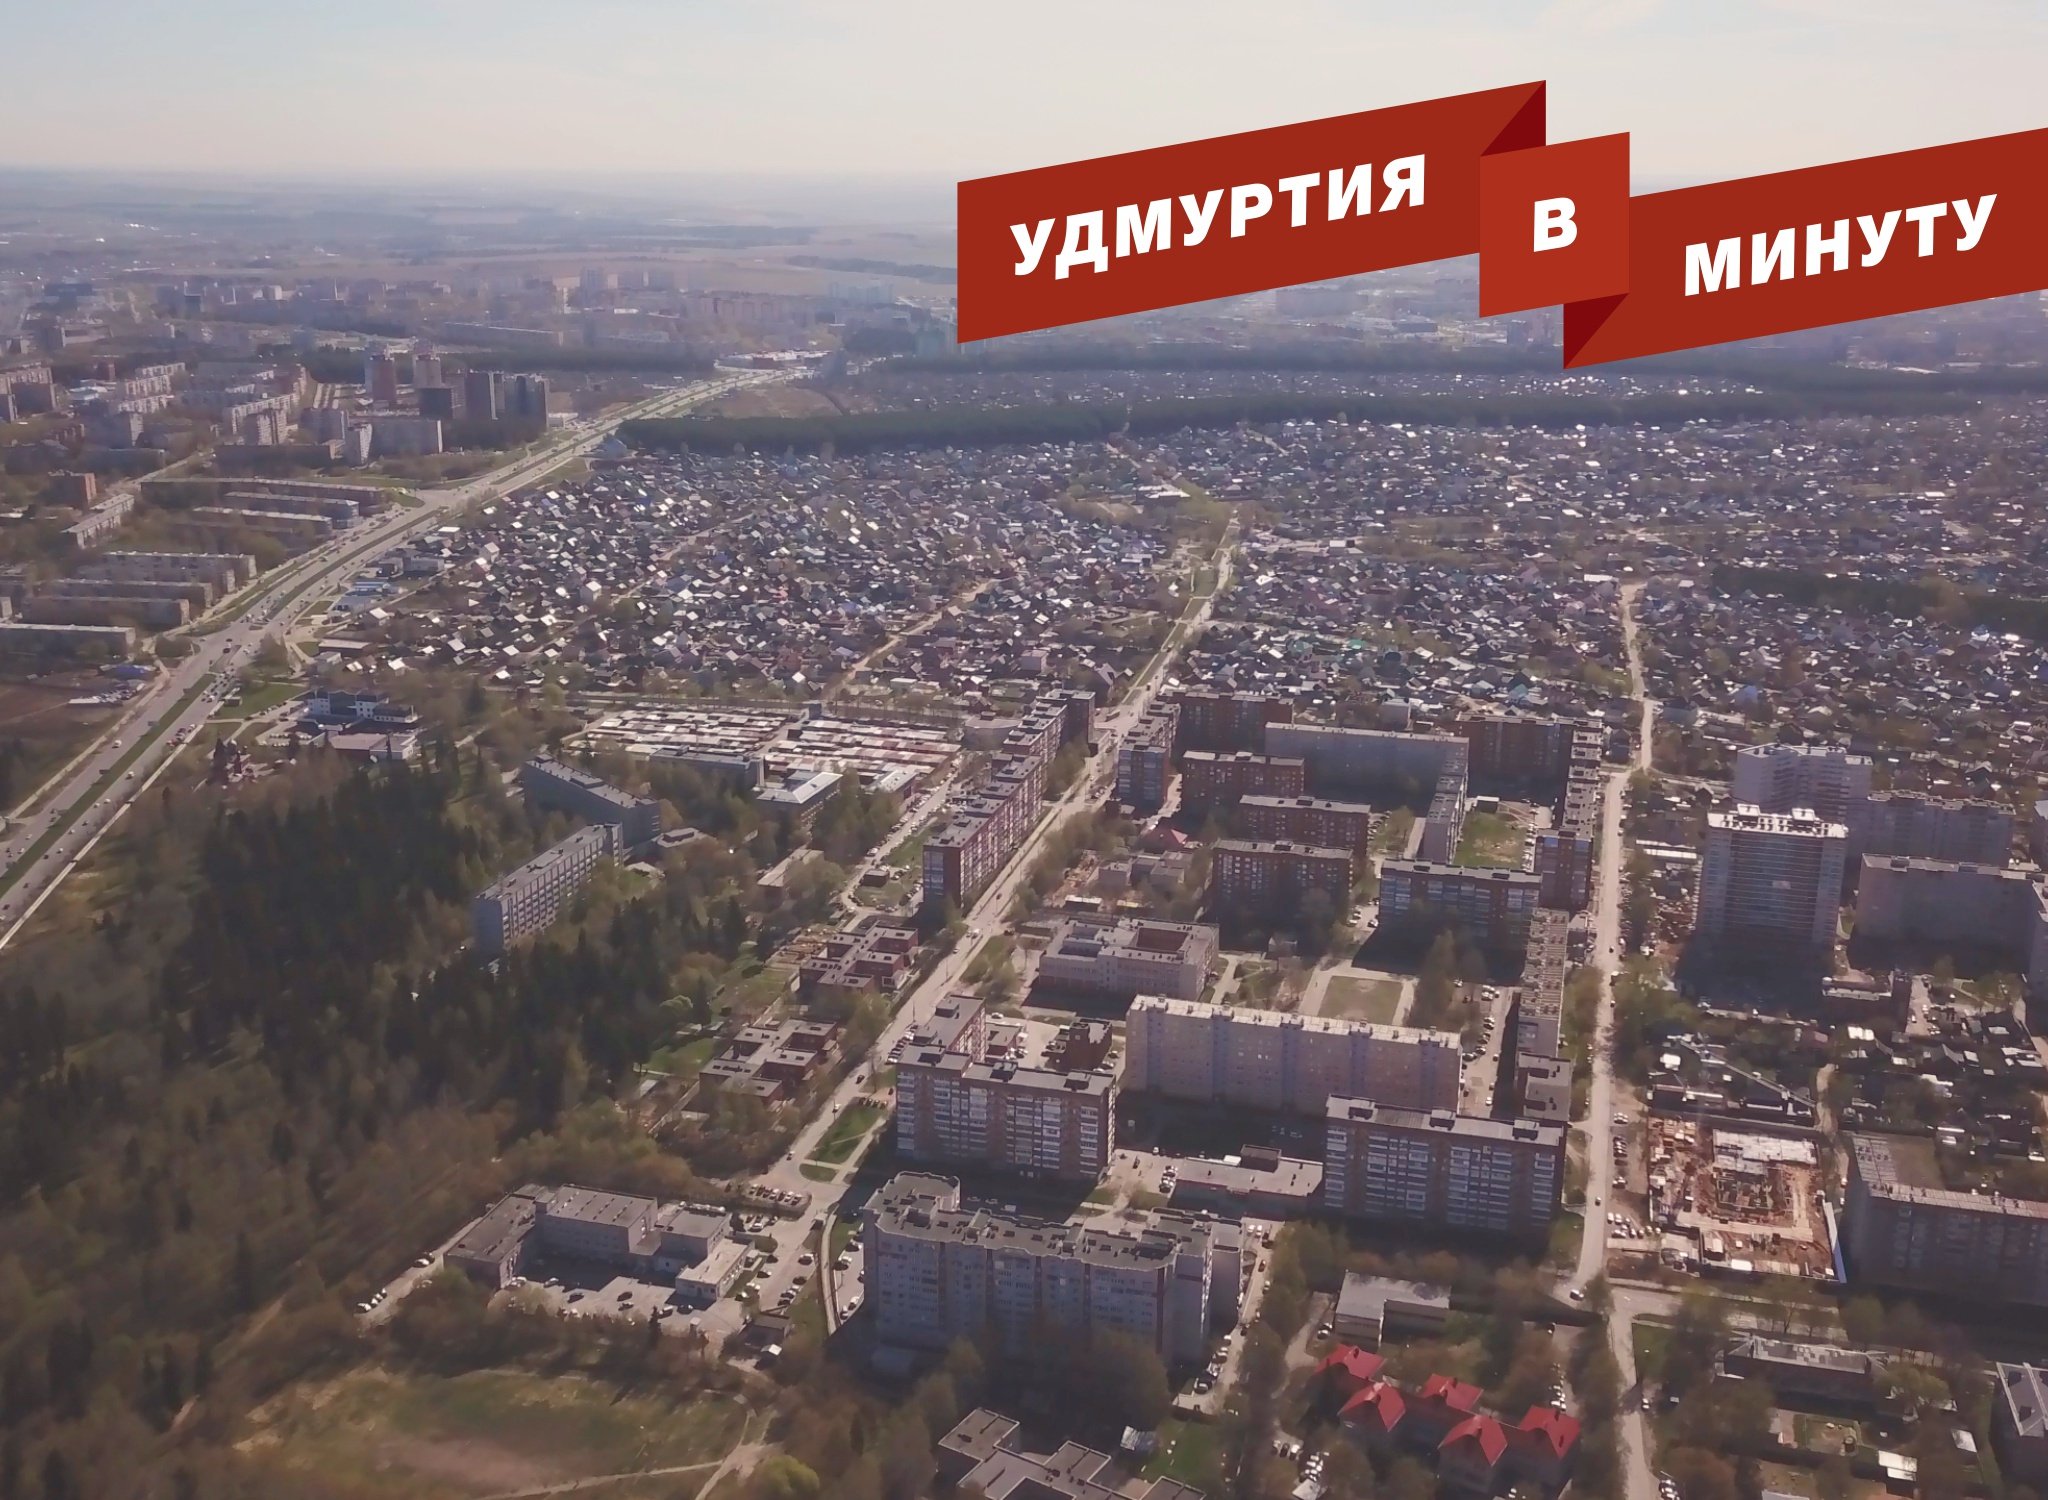 Удмуртия в минуту: проблемы Восточного поселка в Ижевске и цены на билеты «Ижавиа»